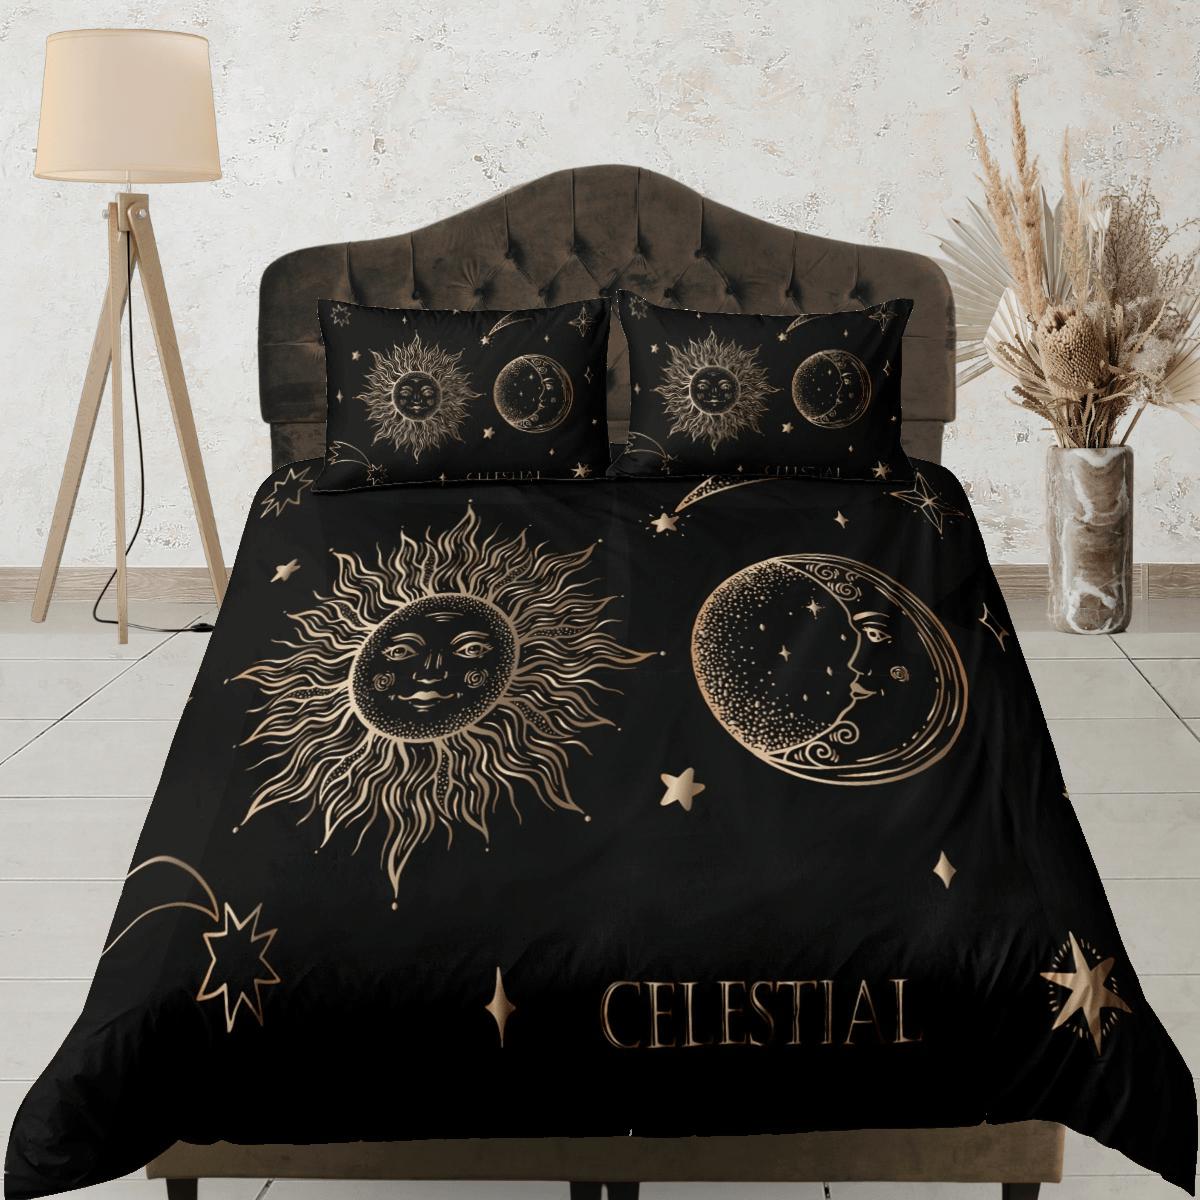 daintyduvet Celestial bedding black, sun and moon witchy decor dorm bedding, aesthetic duvet boho bedding set full king queen, astrology gift gothic art